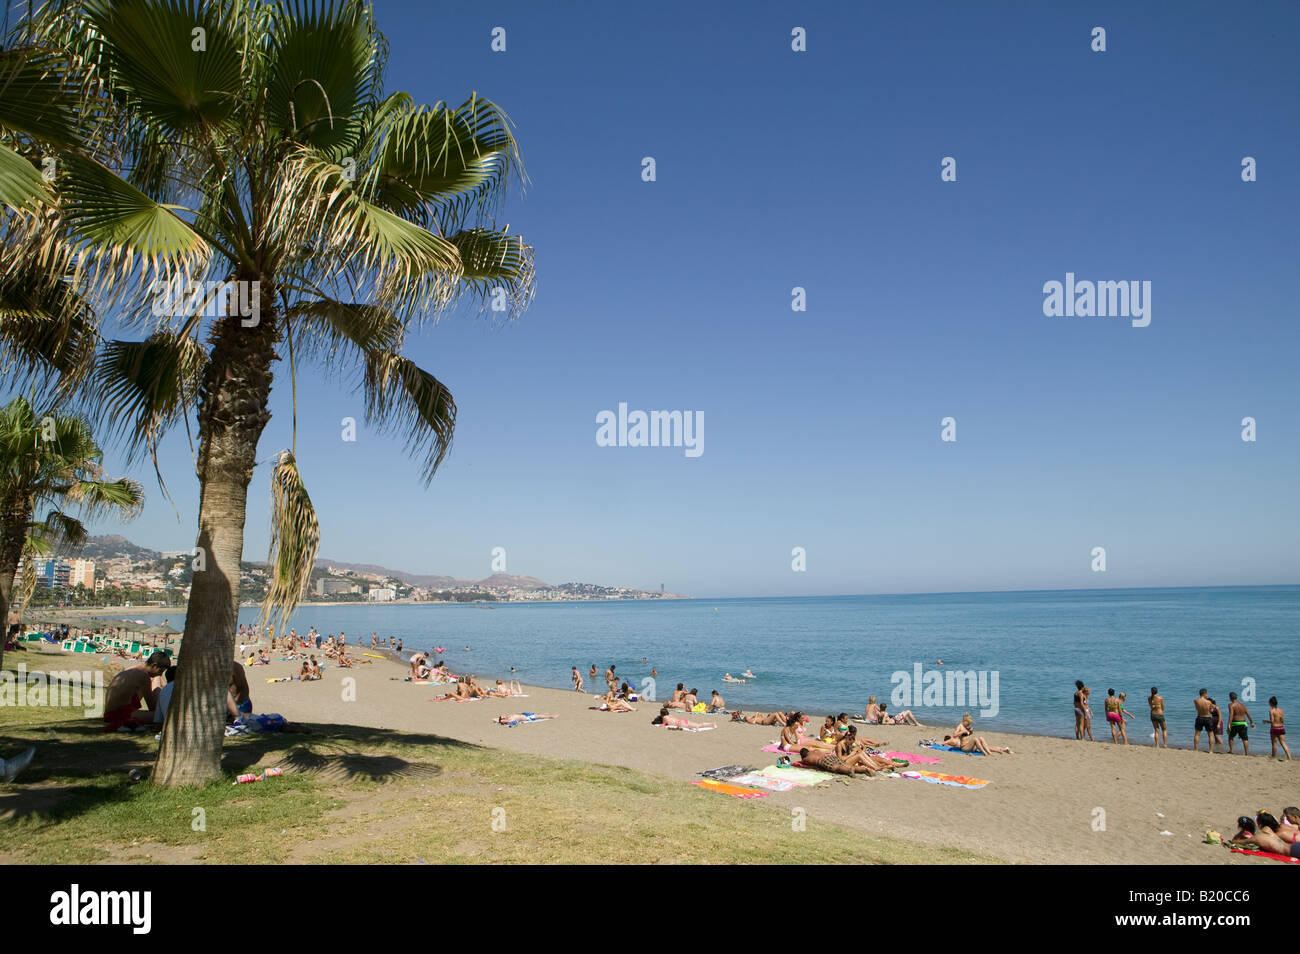 Spagna, Malaga, spiaggia, viaggi, vacanze e vacanze, Europa, Mediterraneo, mediterraneo, destinazione vacaciones, turistico, turismo Foto Stock